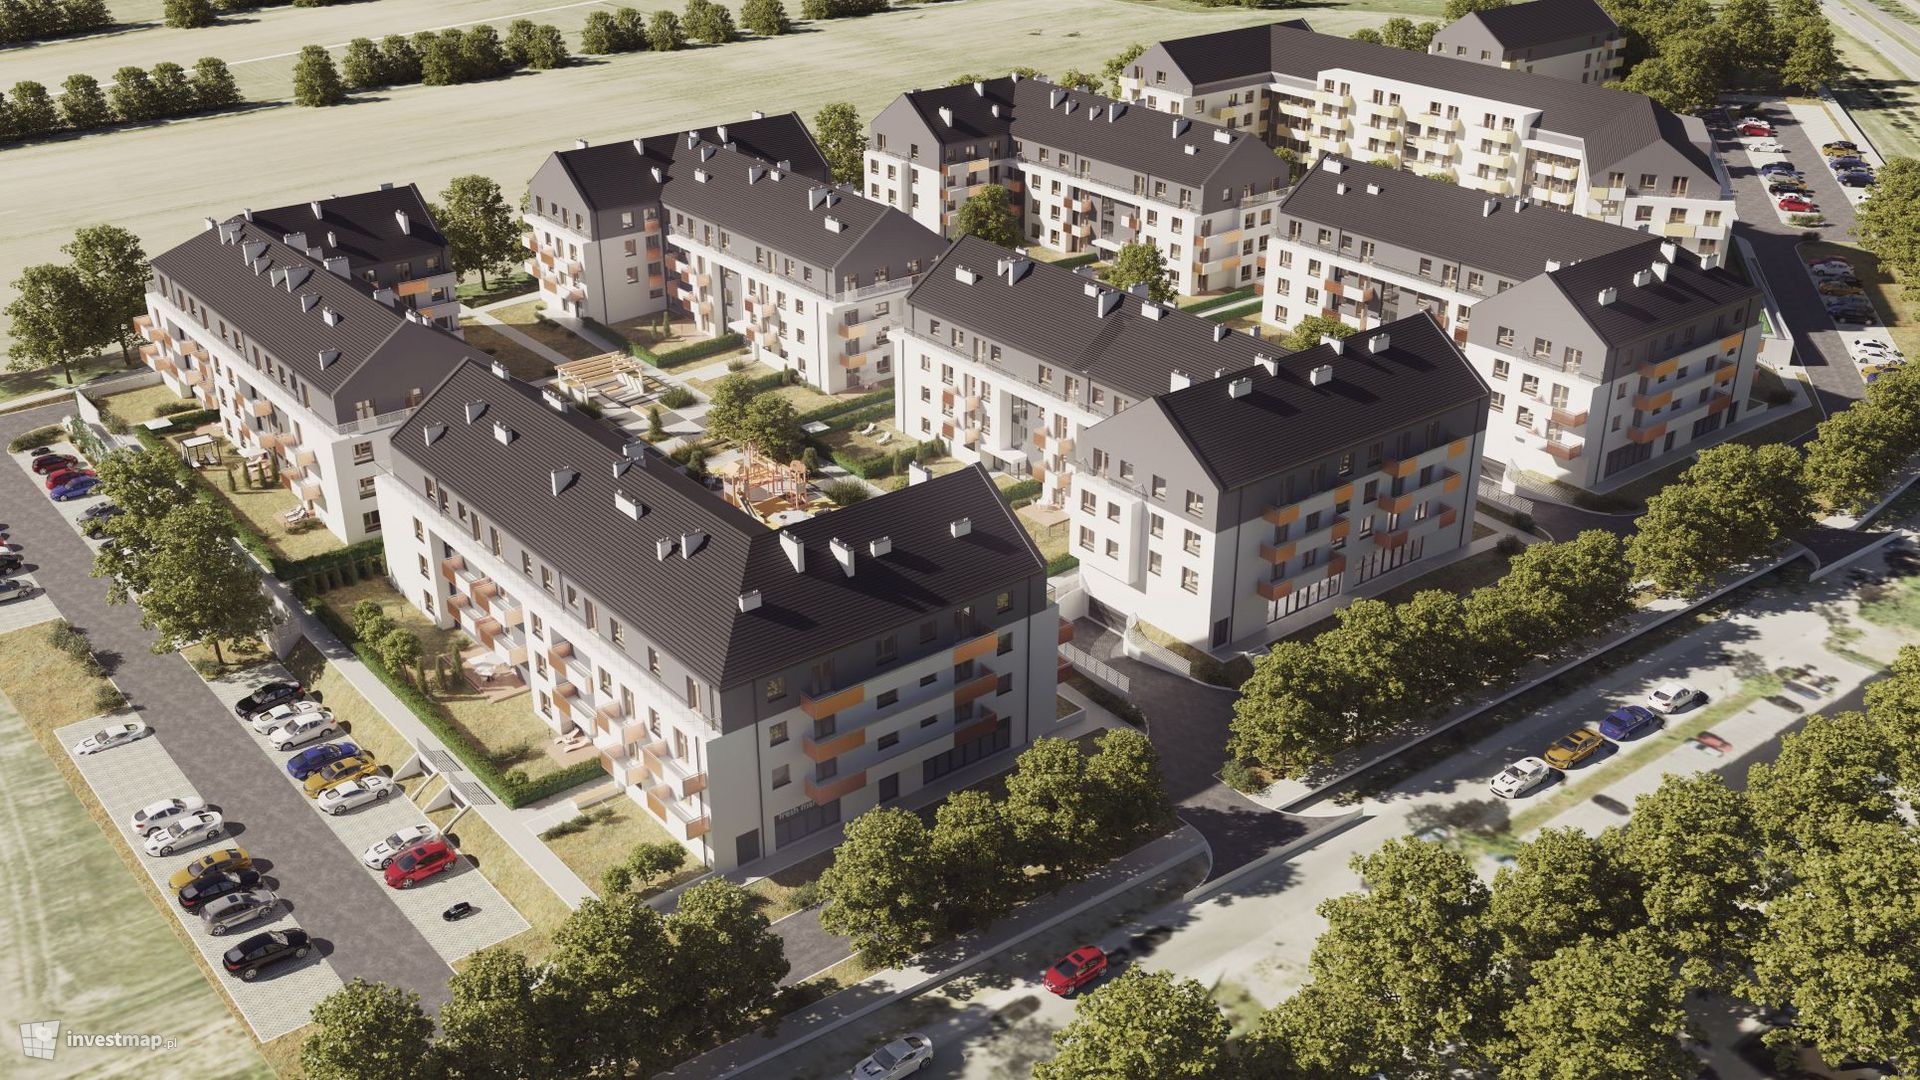 Grupa PHN S.A. rusza z budową swojej pierwszej inwestycji mieszkaniowej we Wrocławiu 